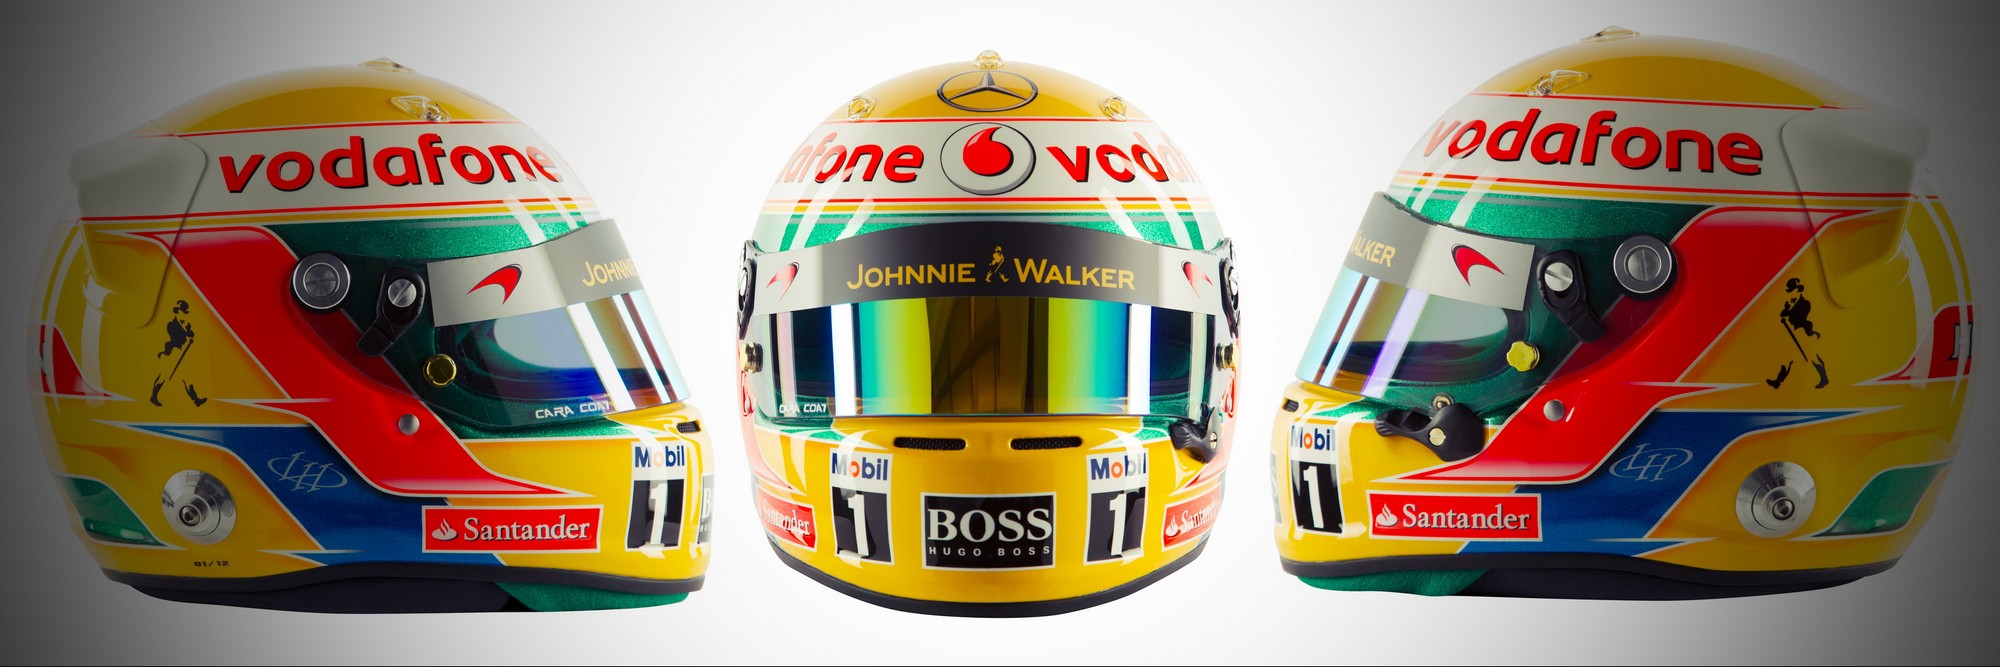 Шлем Льюиса Хэмилтона на сезон 2012 года | 2012 helmet of Lewis Hamilton